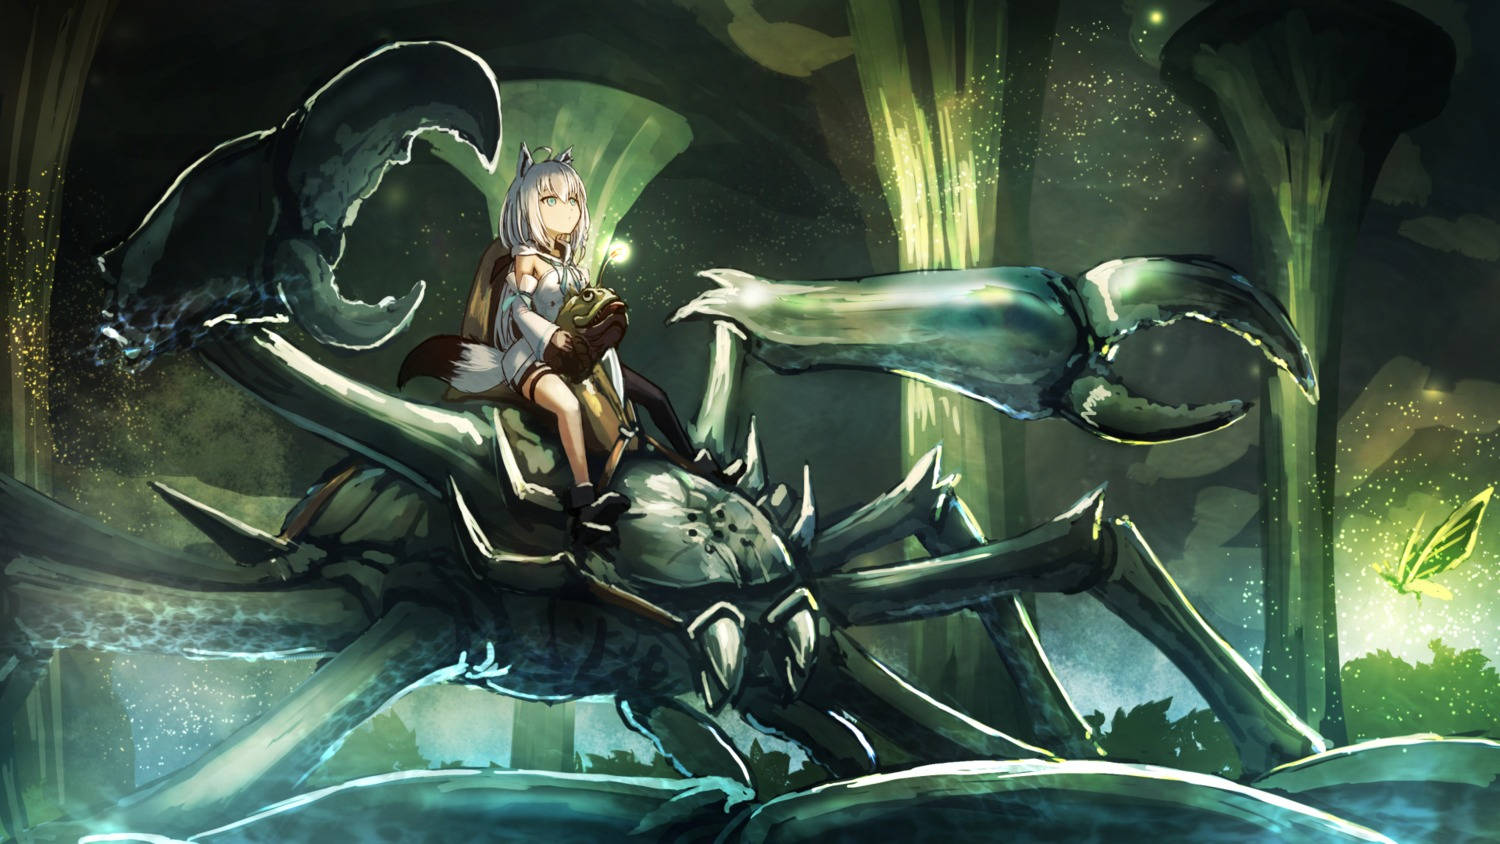 Fantasy Cave Aesthetic Anime Art Desktop Wallpaper